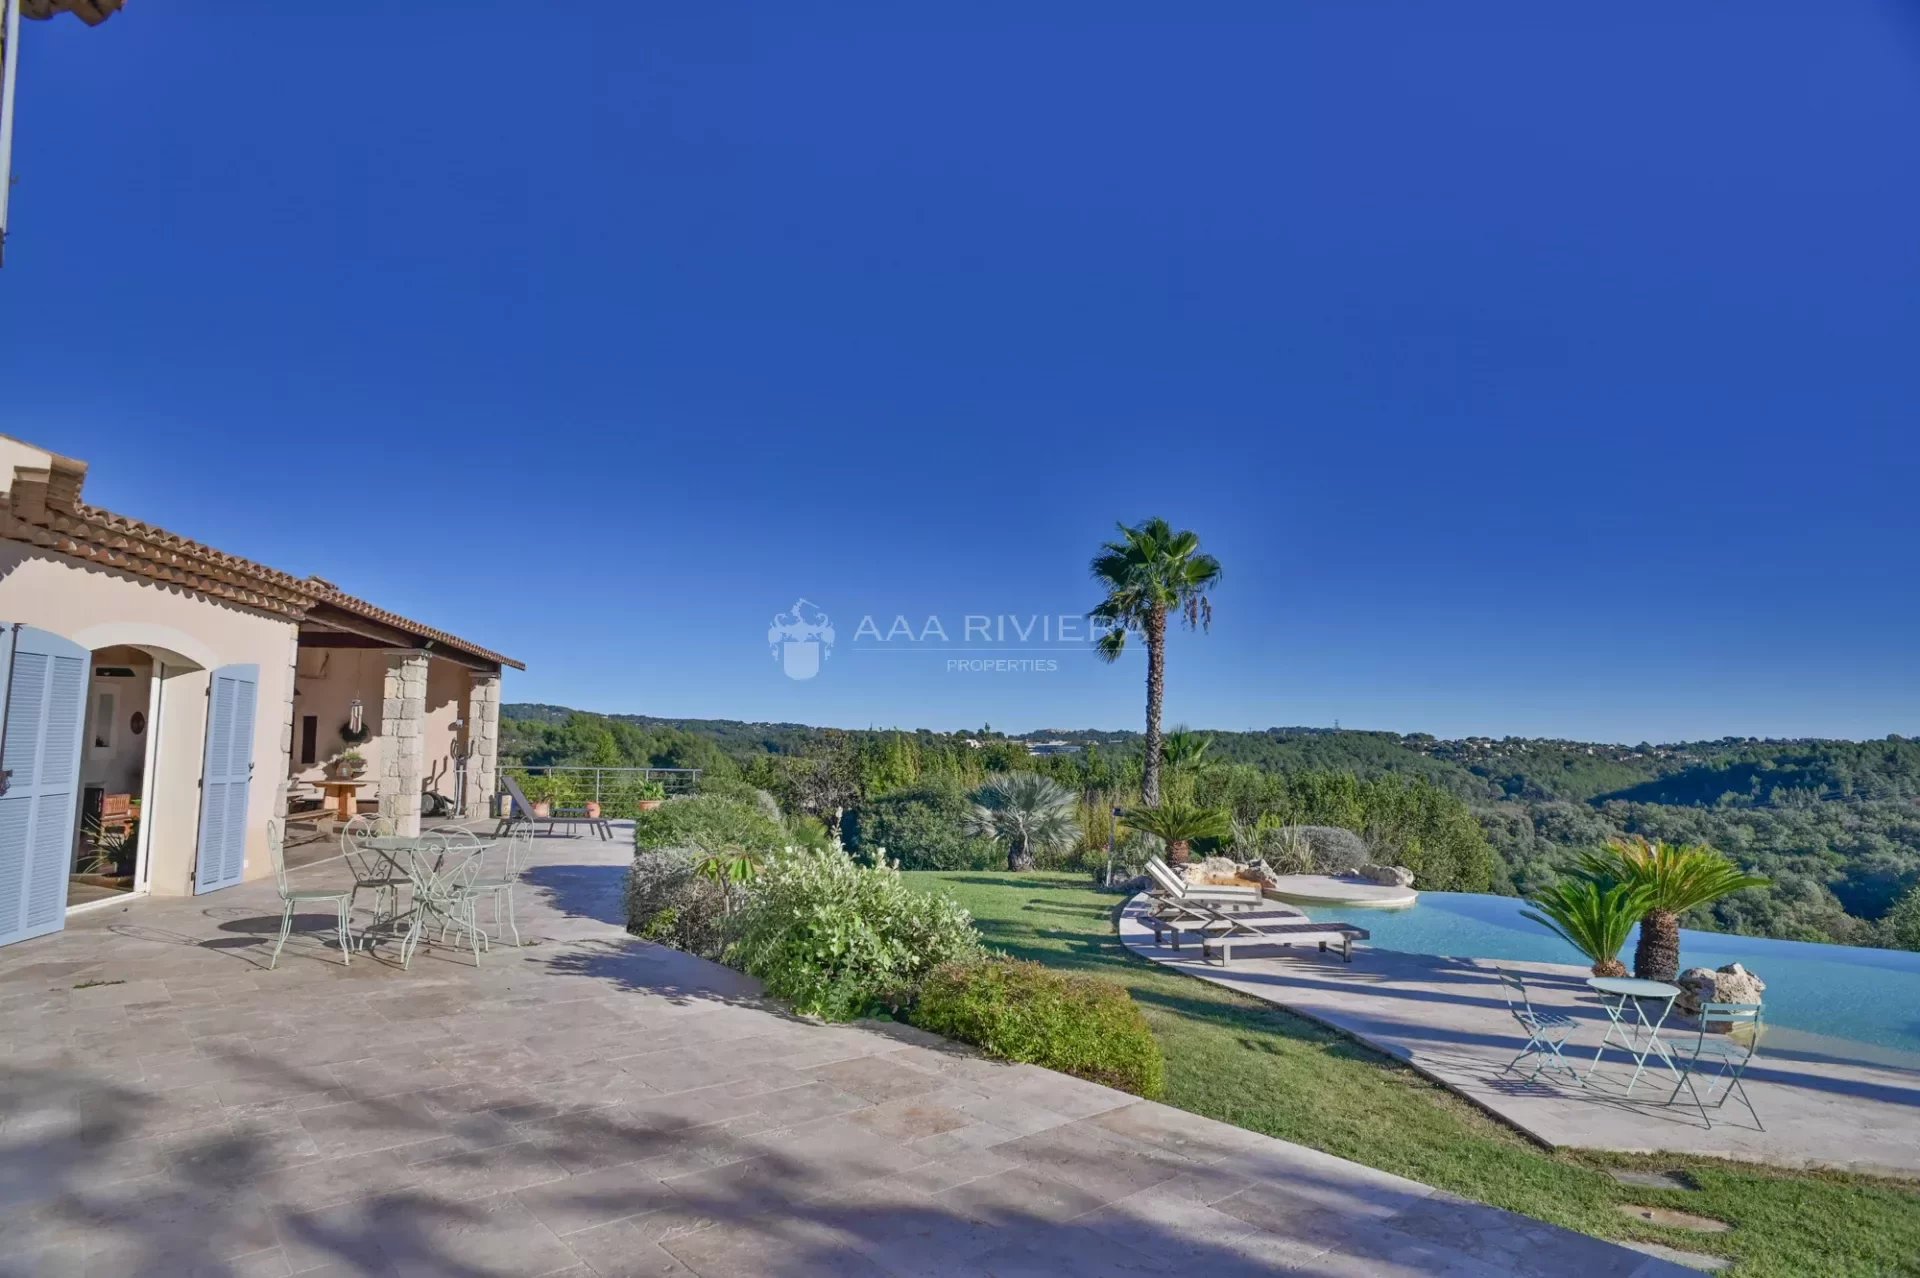 Exclusivité - Proche Cannes - Magnifique propriété avec piscine - Vue panoramique mer et collines  - Calme absolu